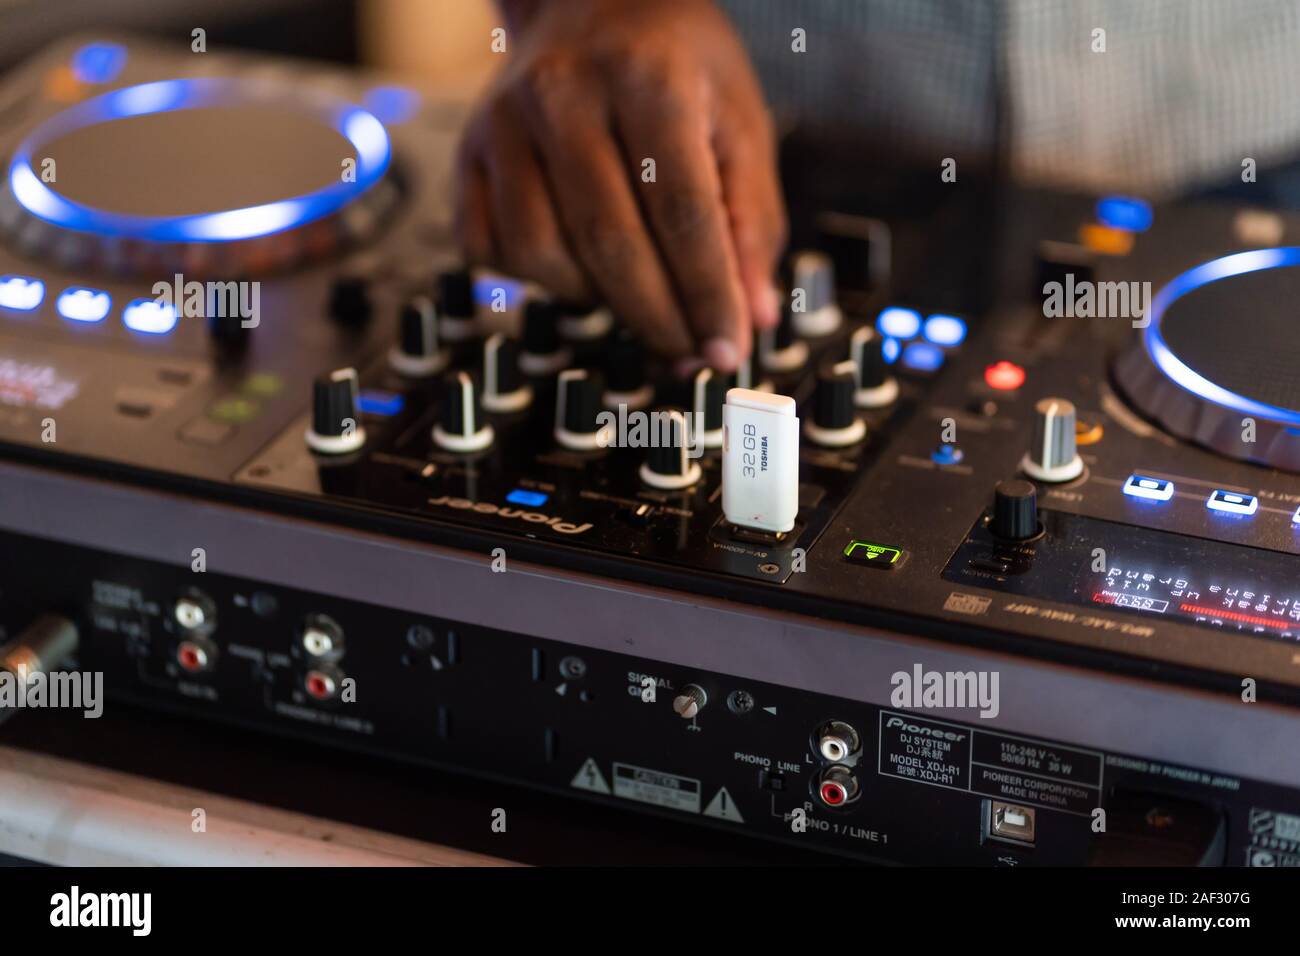 Club DJ joue de la musique sur scène en boite.Main de disc jockey son réglage de volume.L'équipement audio professionnel sur music festival Banque D'Images